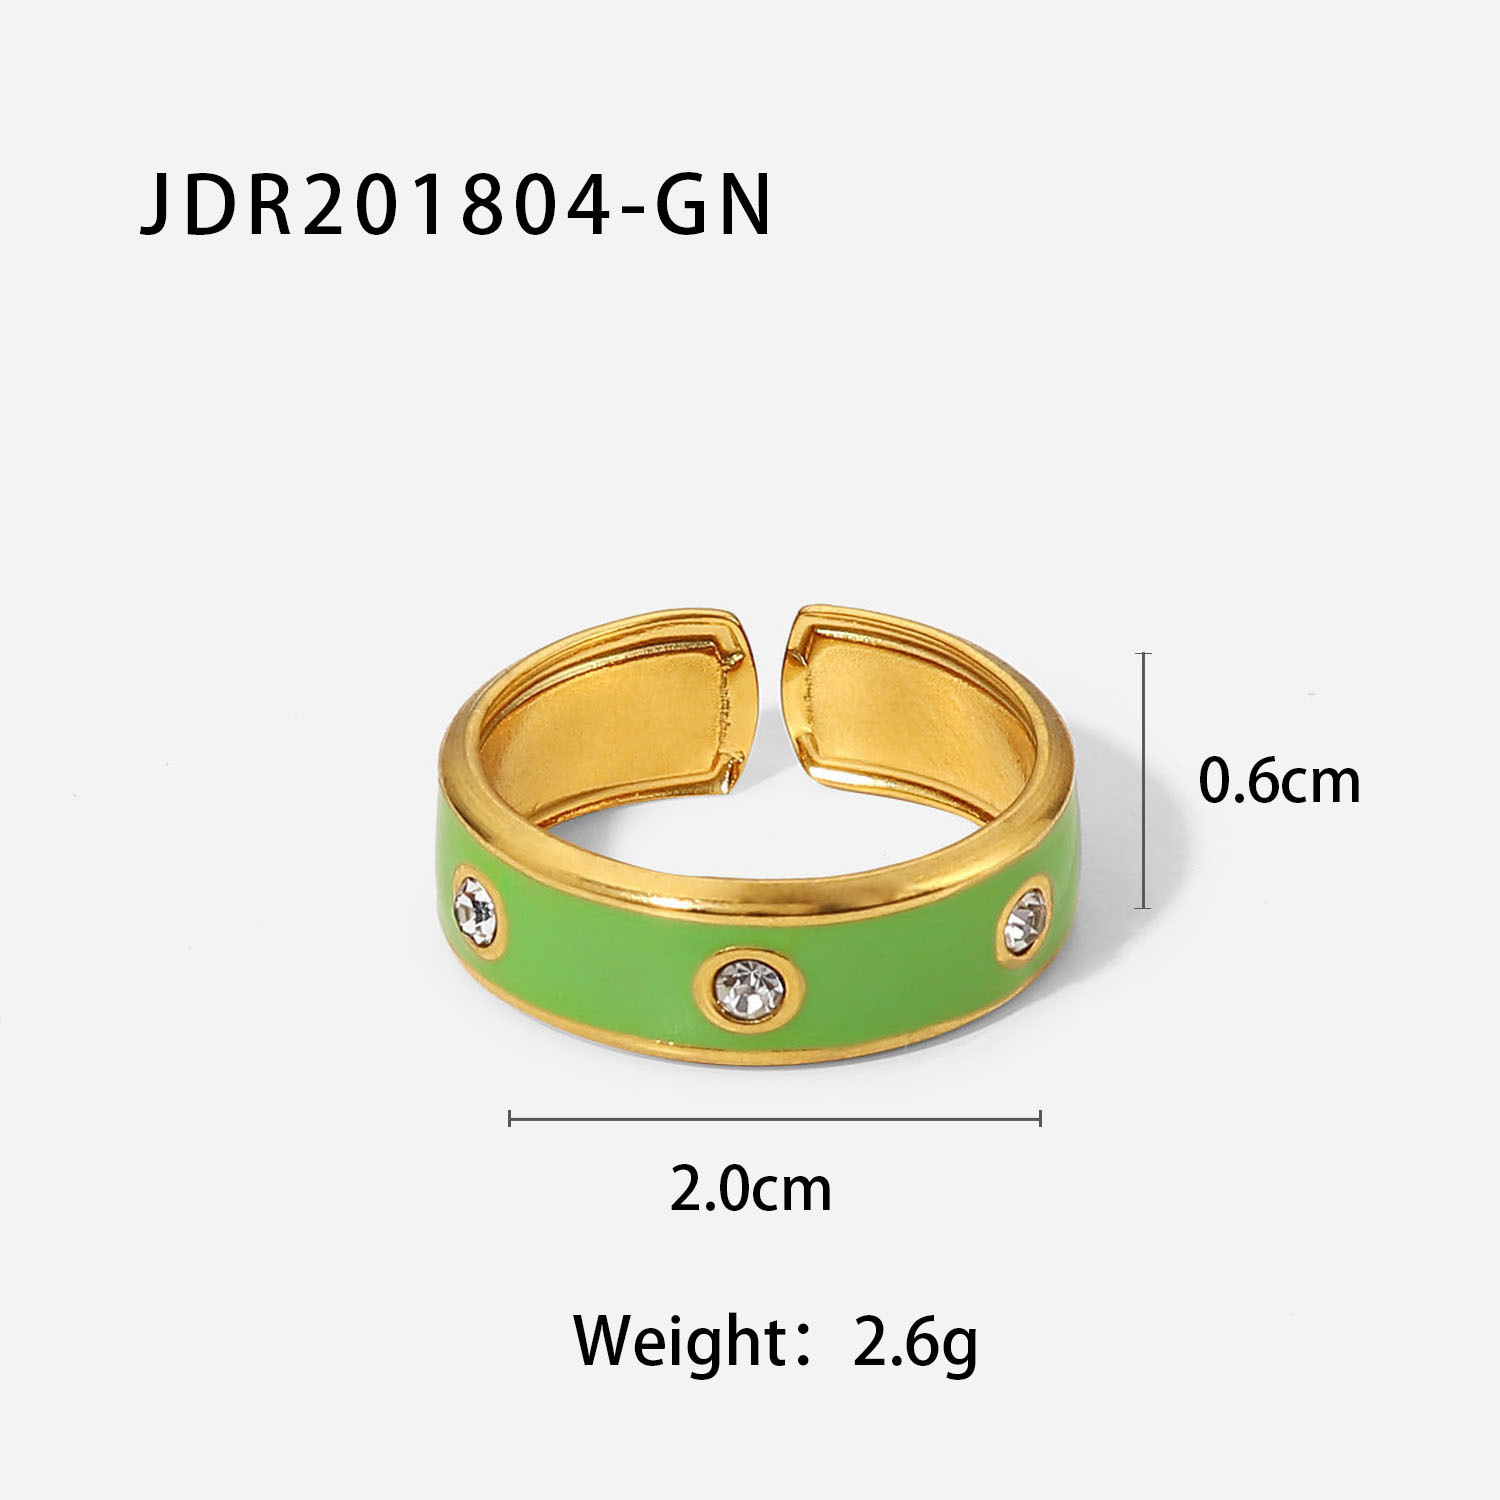 JDR201804-GN